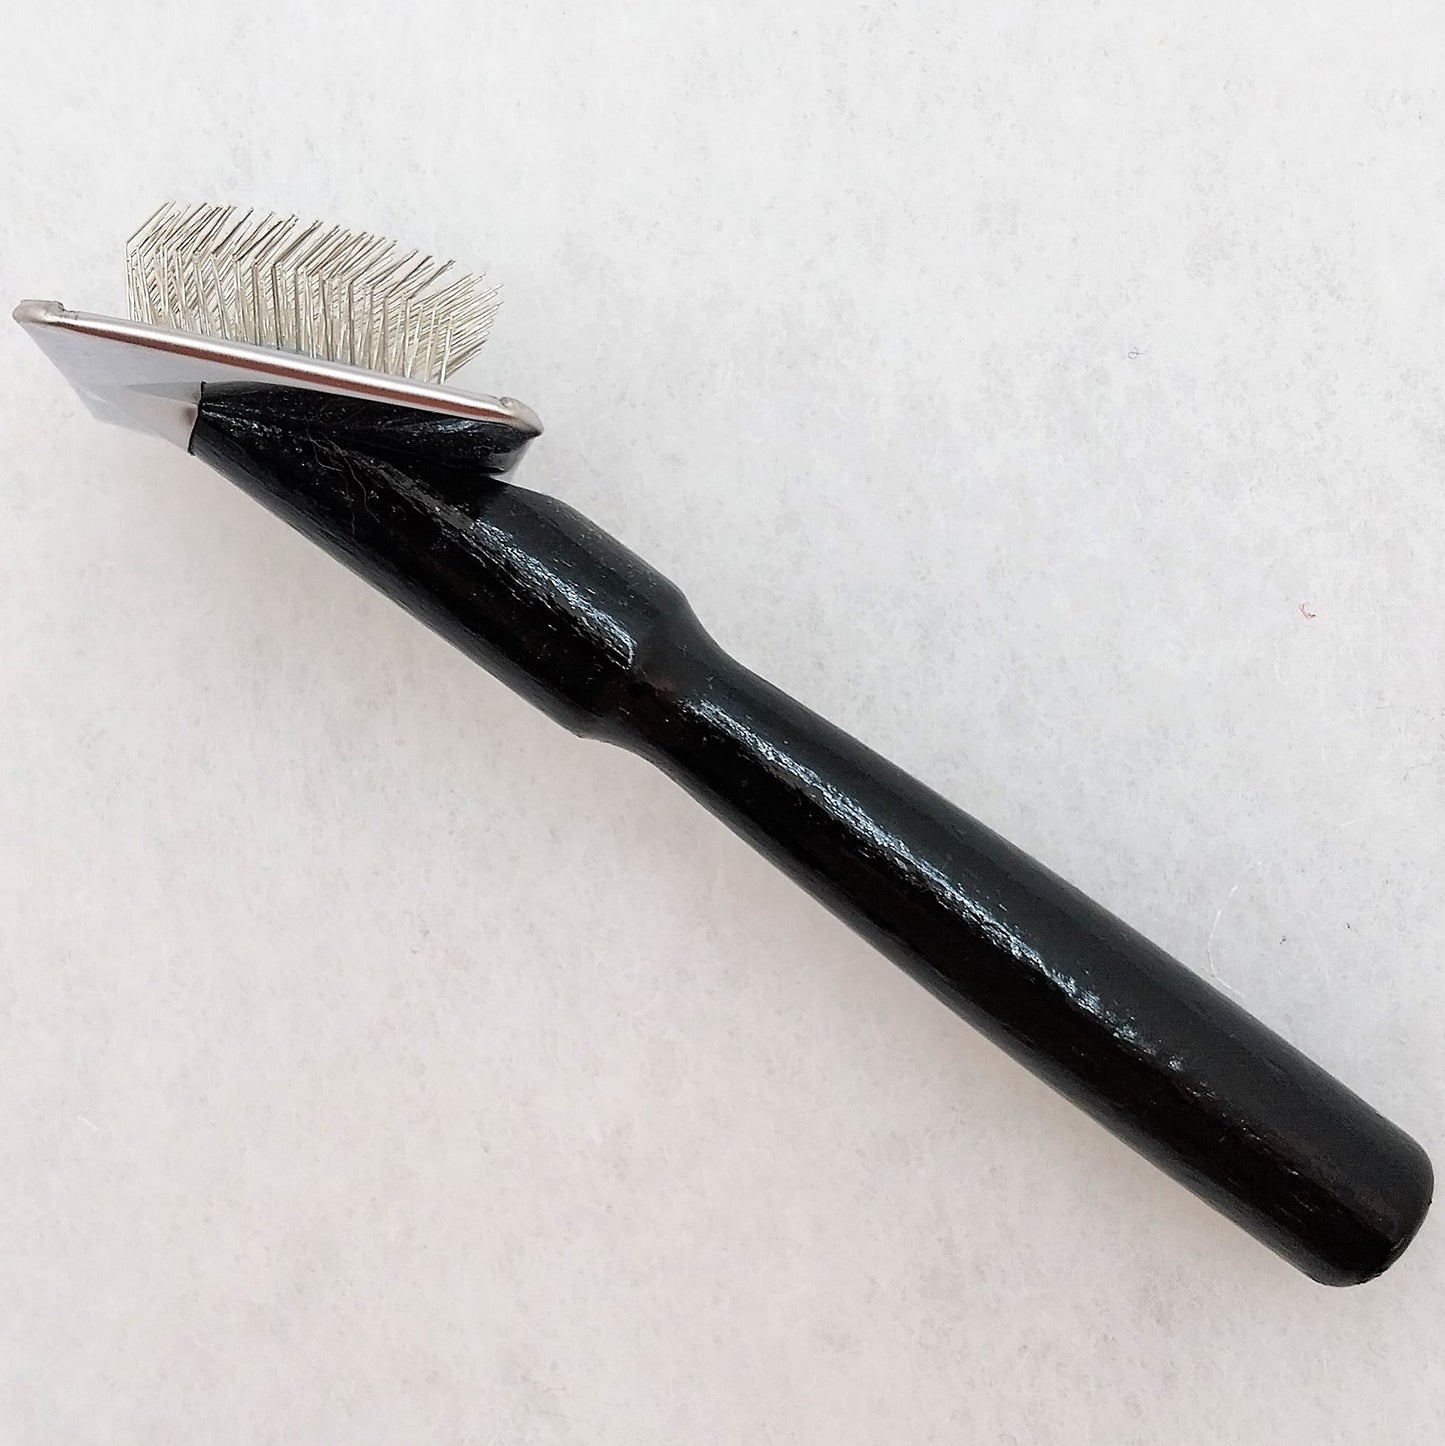 #1 All Systems Slicker Brush, Zupfbürste für besonders empfindliche Felle